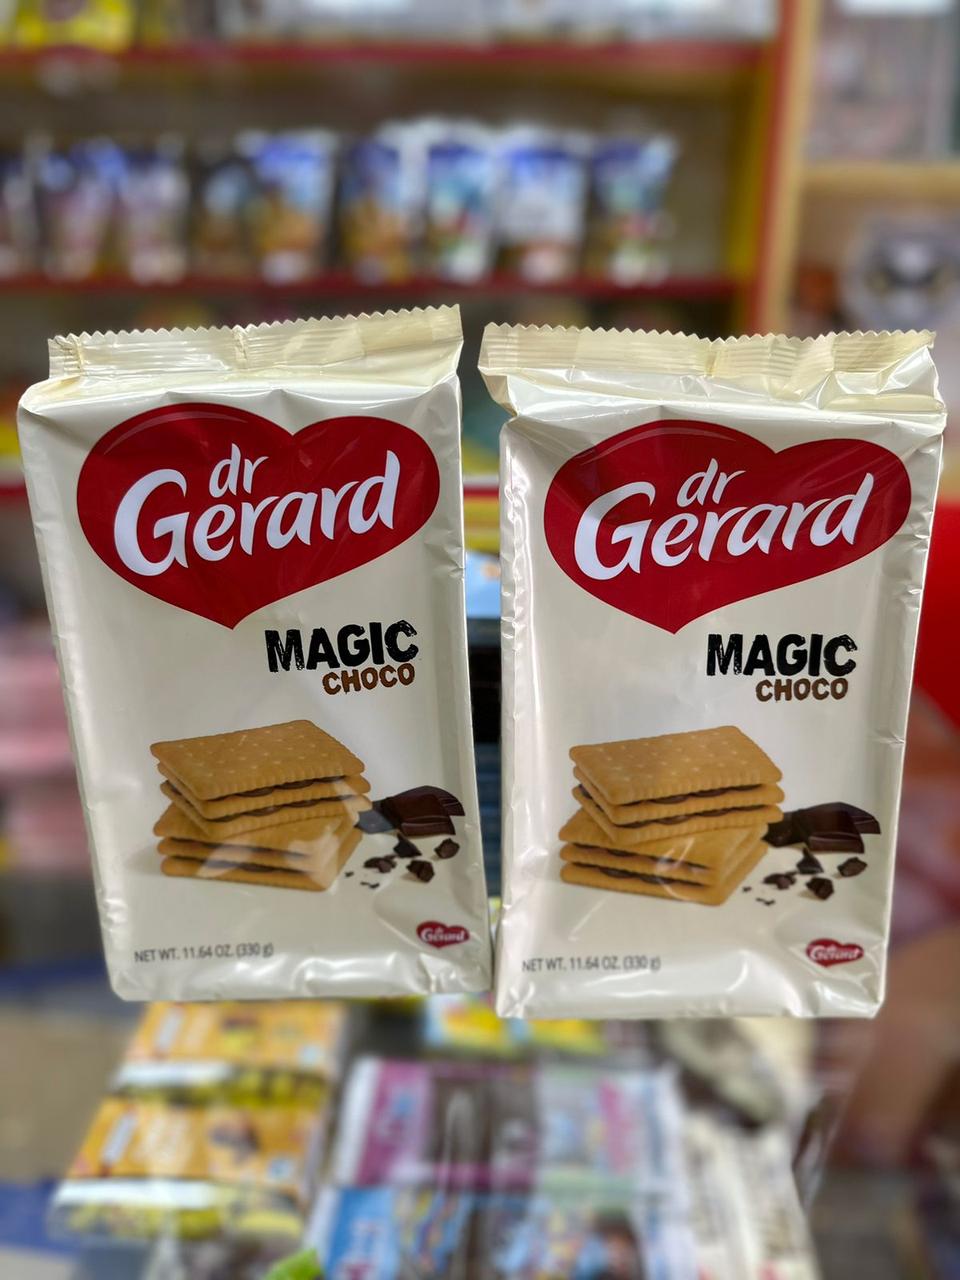 Печенье с шоколадом Magic choco 330гр /Dr. Gerard/ ПОЛЬША